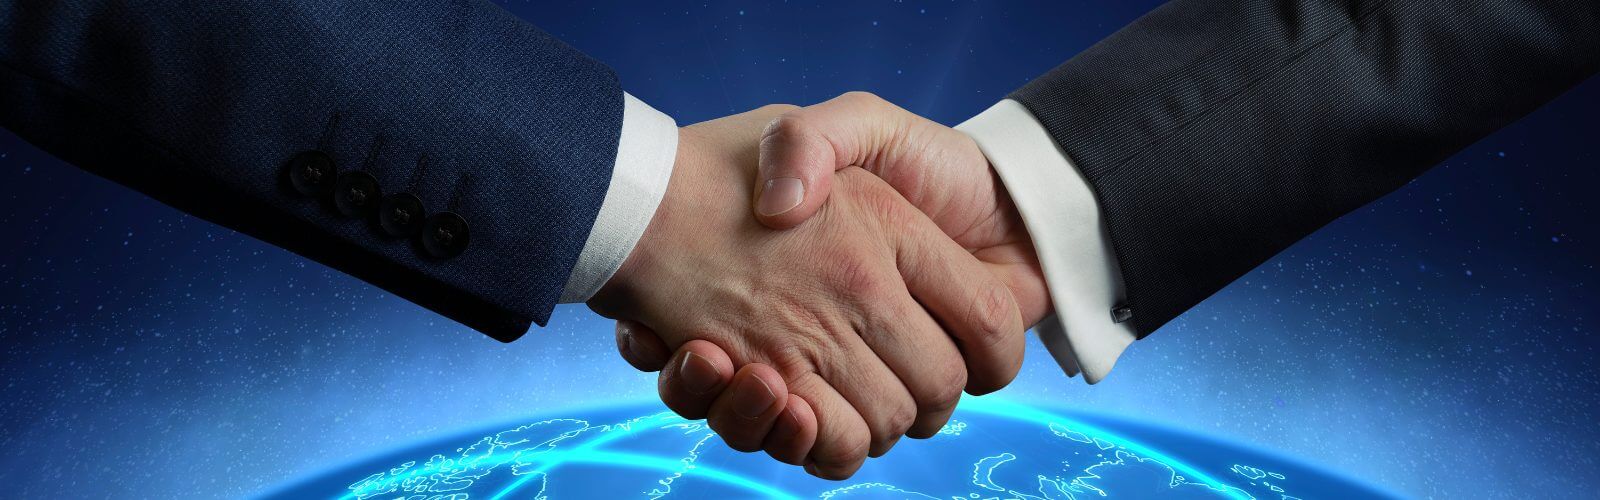 Vergebene Domain kaufen: Symbolbild: Handschlag zwischen zwei Personen